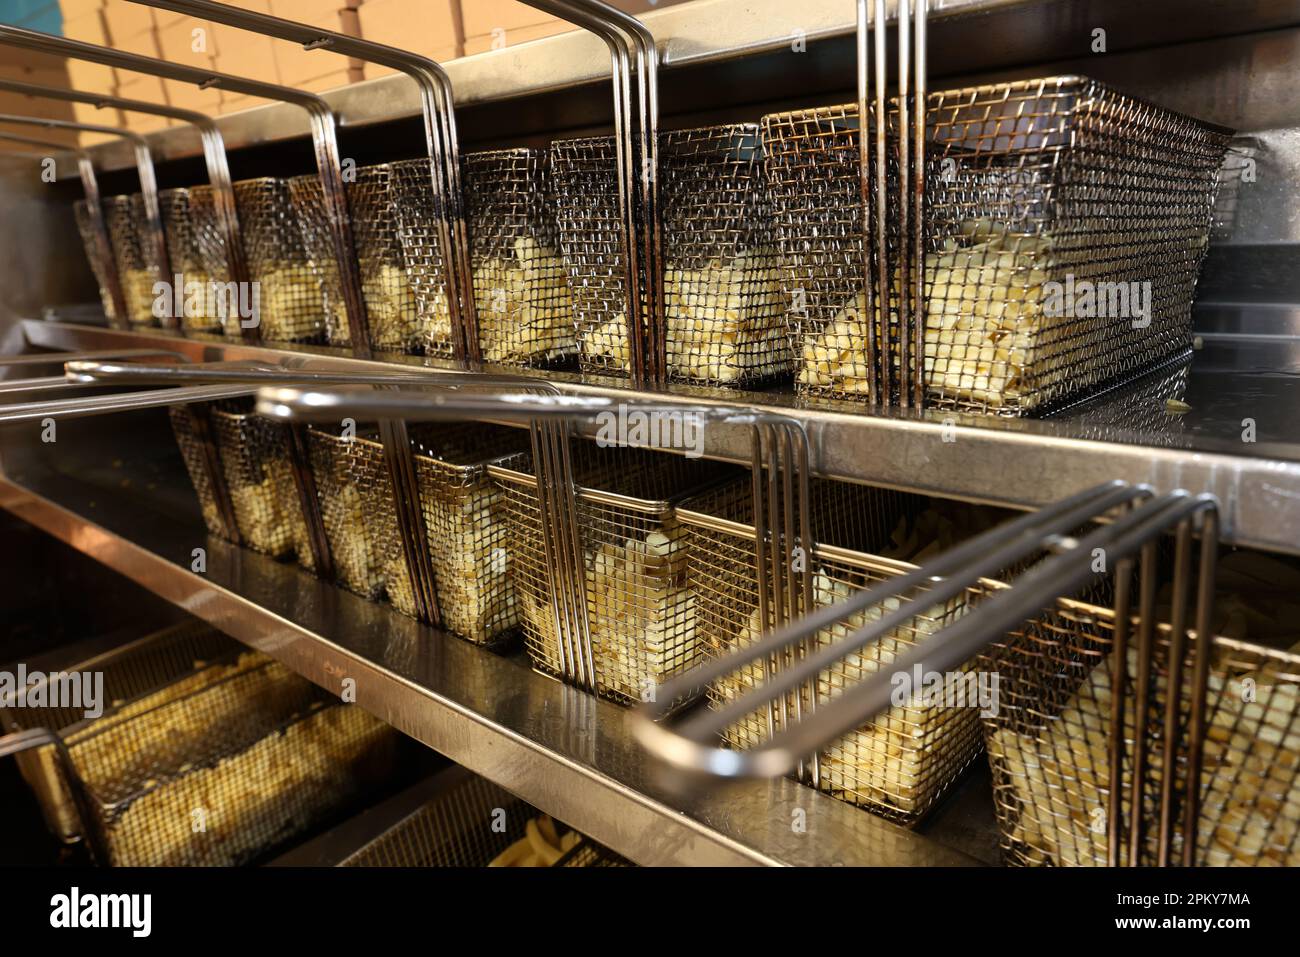 Pommes de terre prêtes à être cuites et transformées en frites, photographiées dans un magasin de poisson et de copeaux à Portsmouth, Hampshire, Royaume-Uni. Banque D'Images